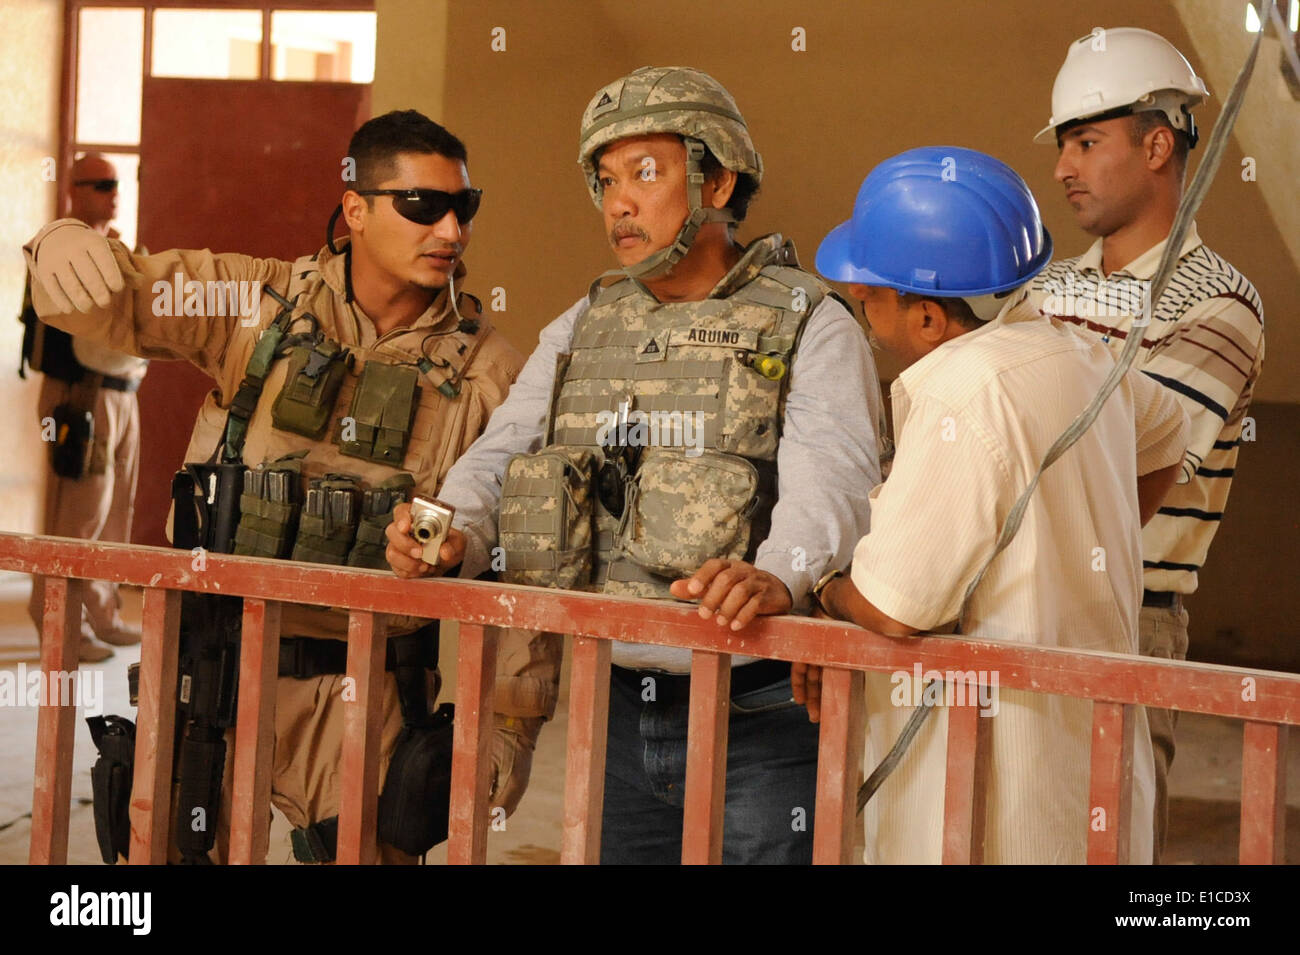 Victor Aquino, centro, DA PARTE DEGLI STATI UNITI Esercito di ingegneri, ispeziona al Scuola Mashroo vicino Kalsu, Iraq, Agosto 25, 2009. T Foto Stock